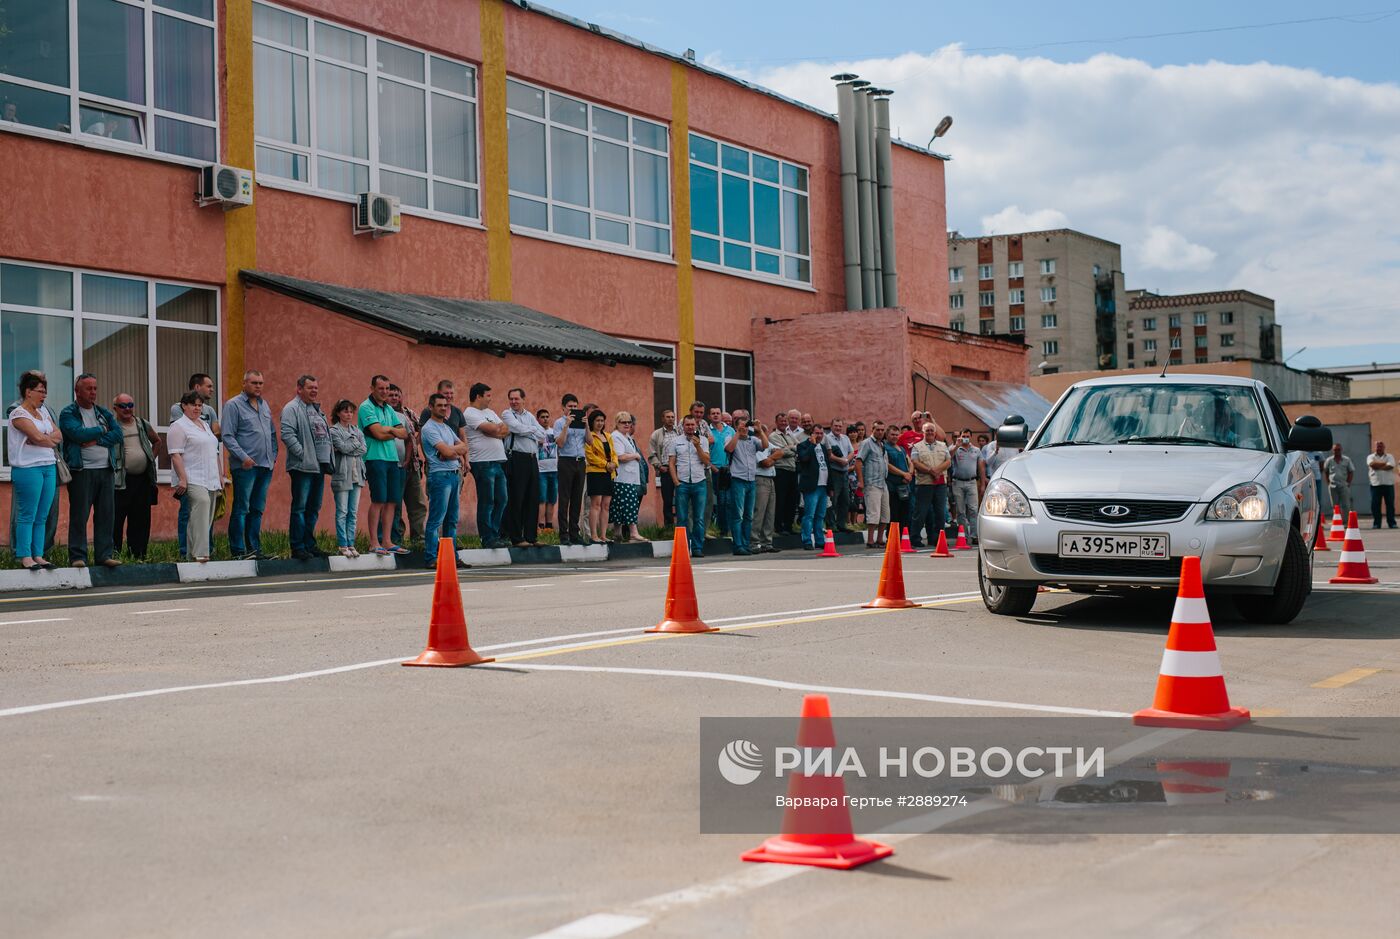 Демонстрация сотрудниками ГИБДД по Ивановской области новых правил сдачи практического экзамена